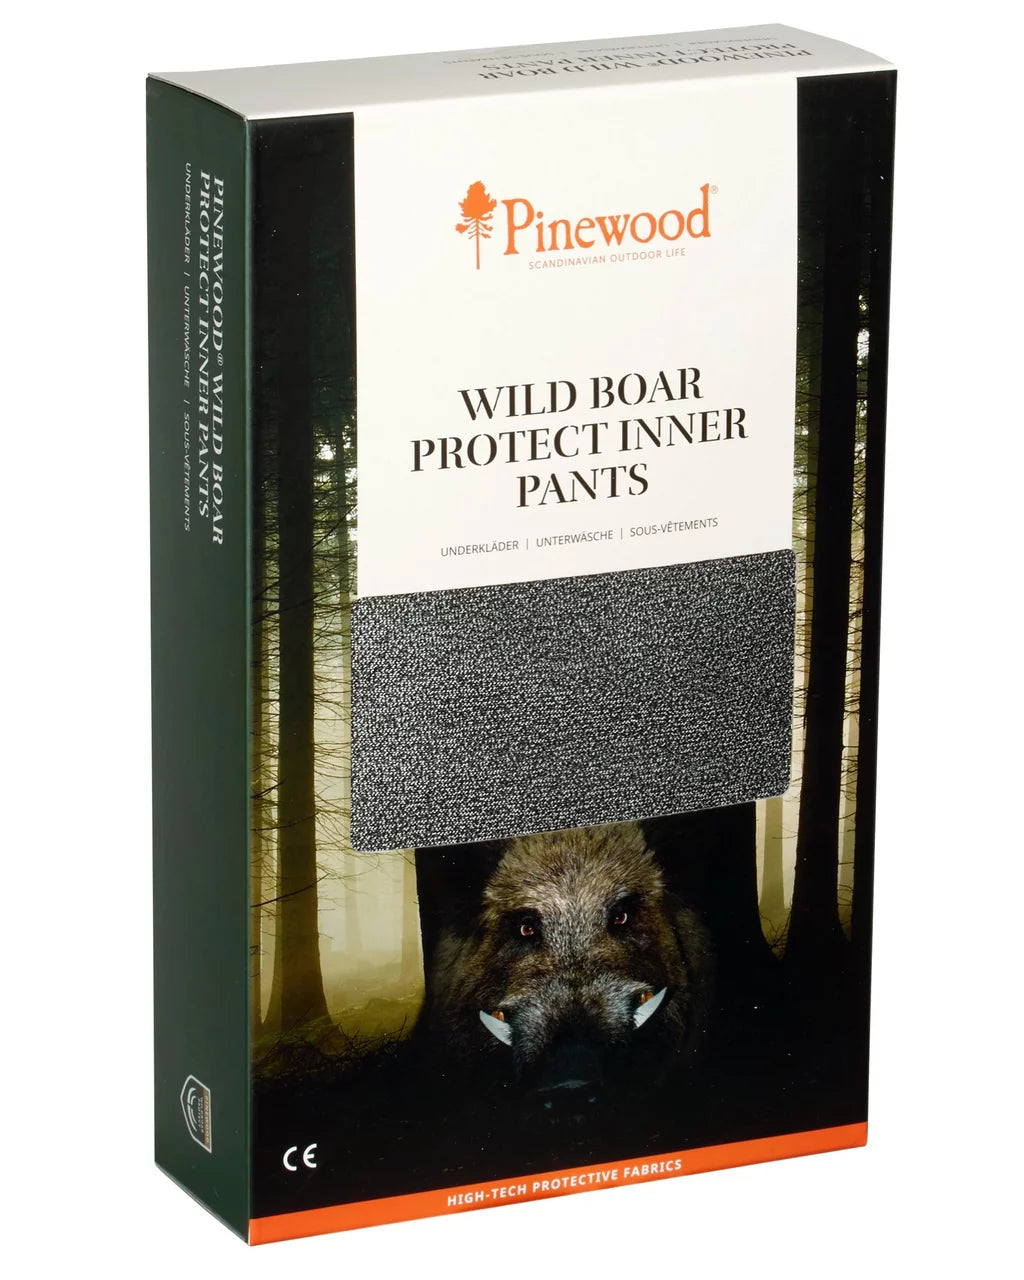 Wildboar protect inner pants